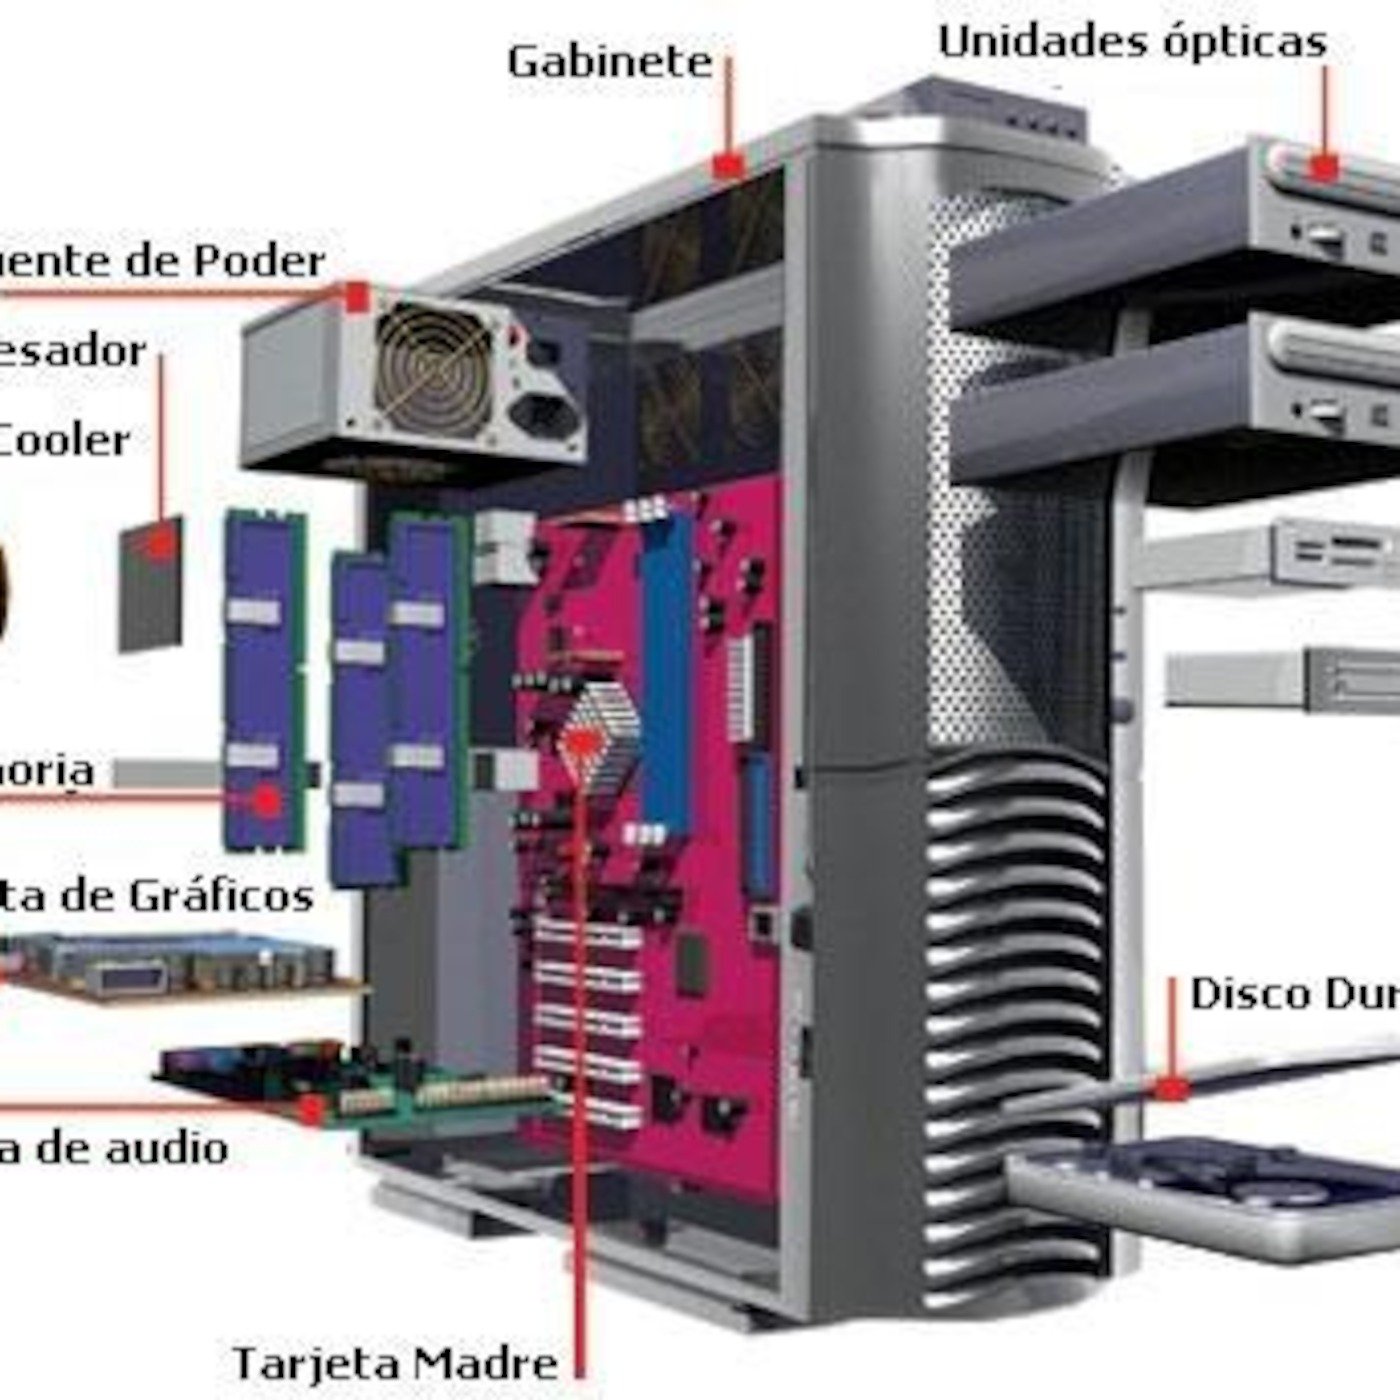 Work components. Детали компьютера. Внутреннее строение ПК. Системный блок компьютера состоит из. (Hardware) составные части компьютера.